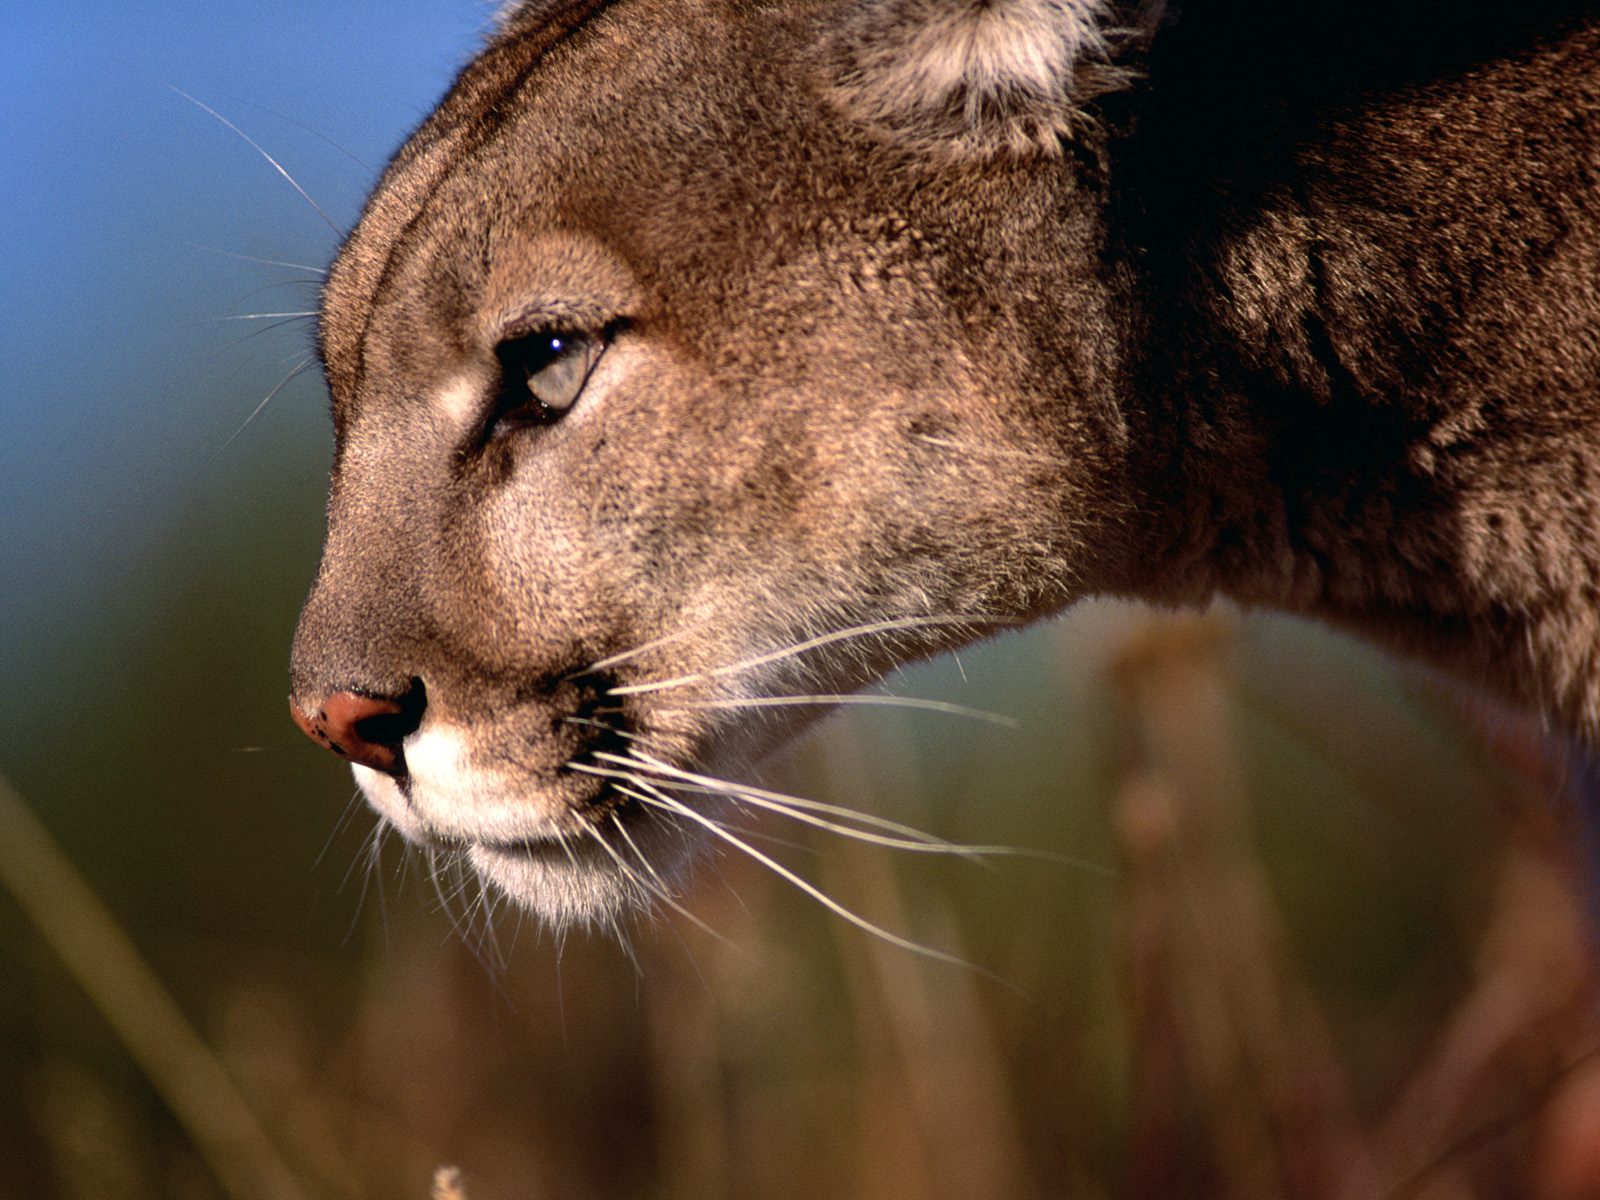 De waarheid vertellen Besmettelijke ziekte In dienst nemen Puma-Livestock Conflicts in Central Argentina – The Jaguar